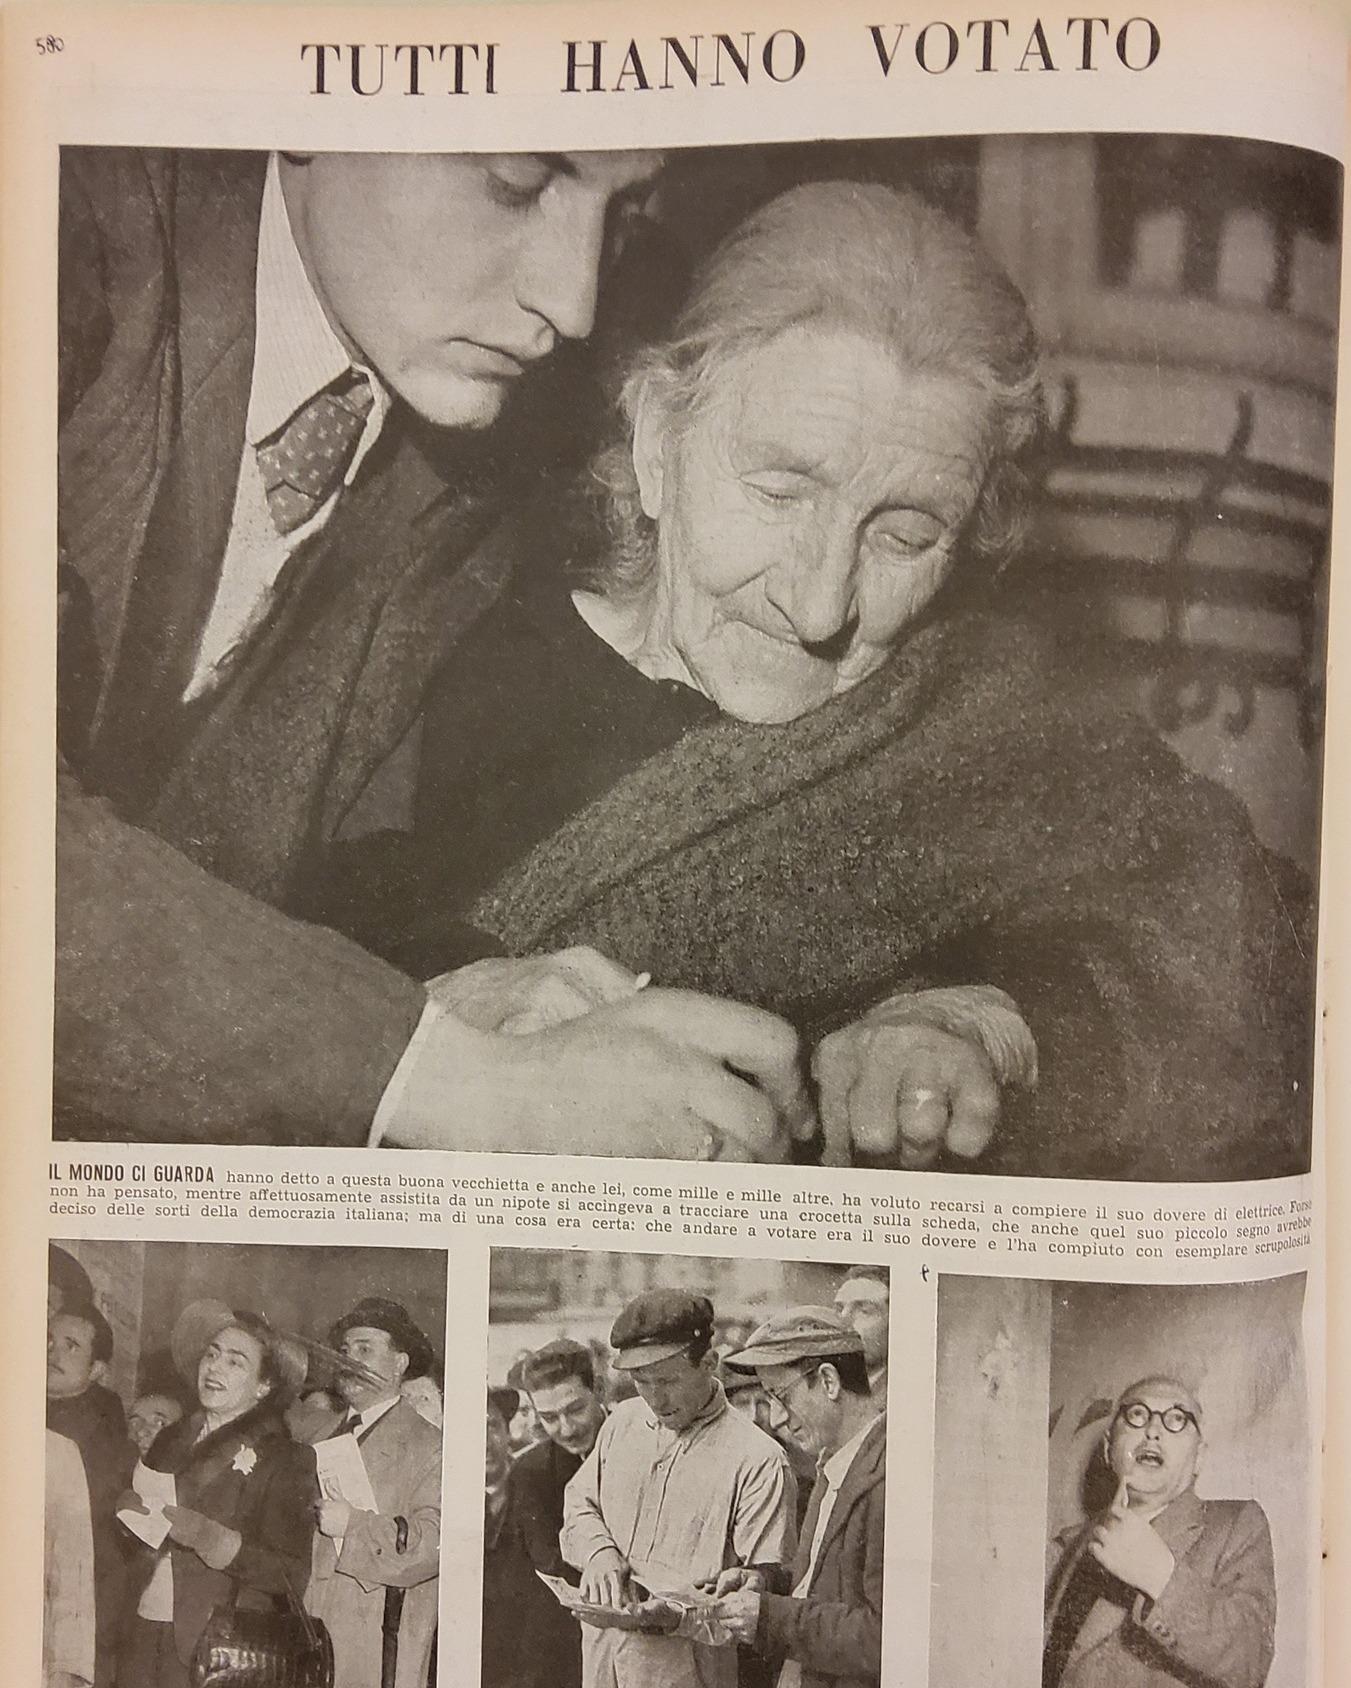 18 aprile 1948 - Pagina della rivista settimanale "L'Illustrazione italiana".